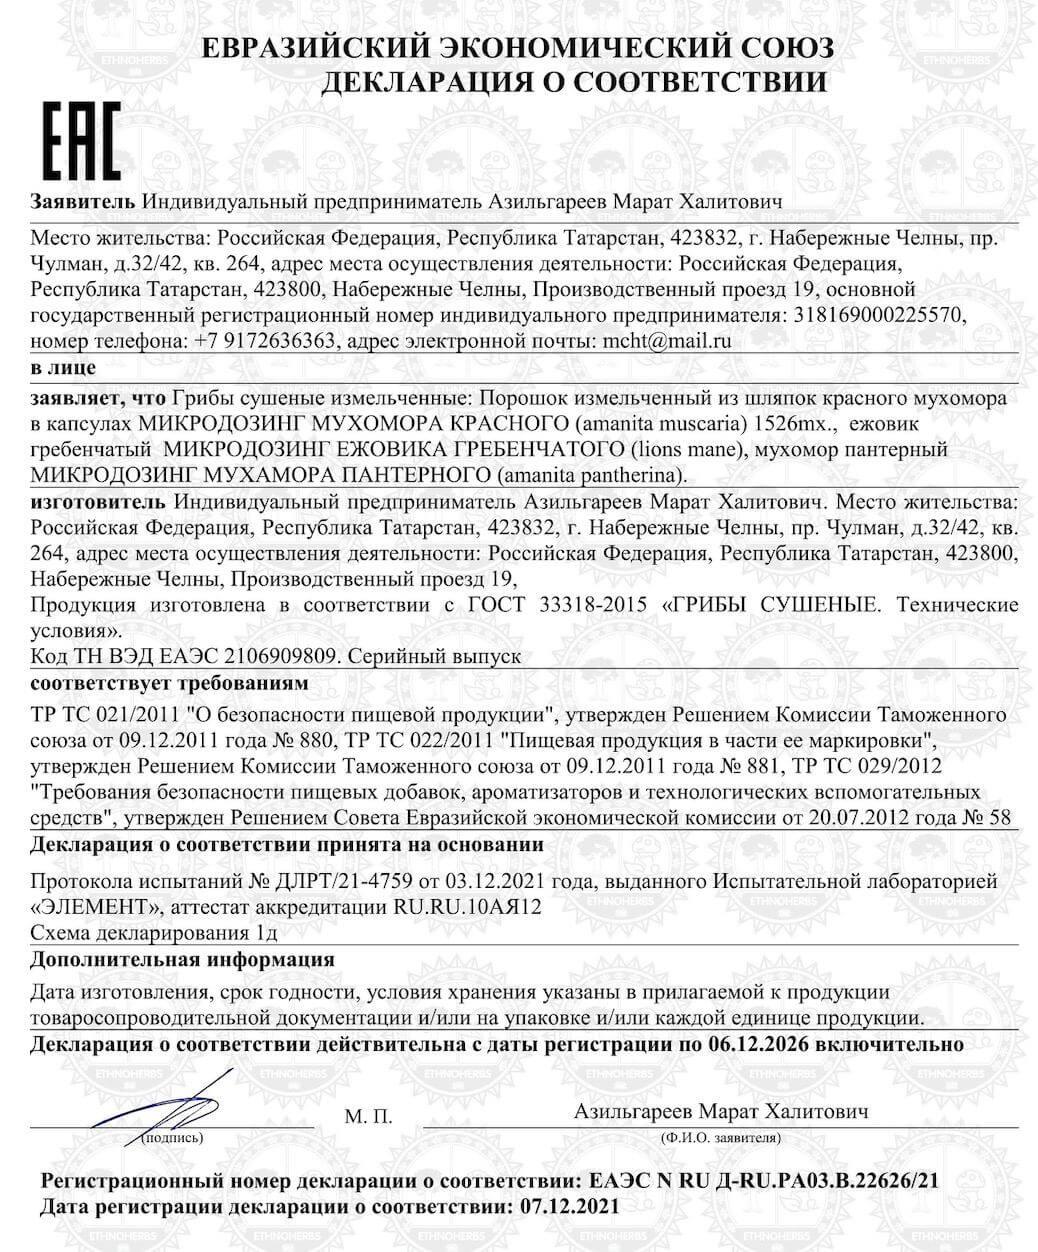 Сертификат на микродозинг мухомора 